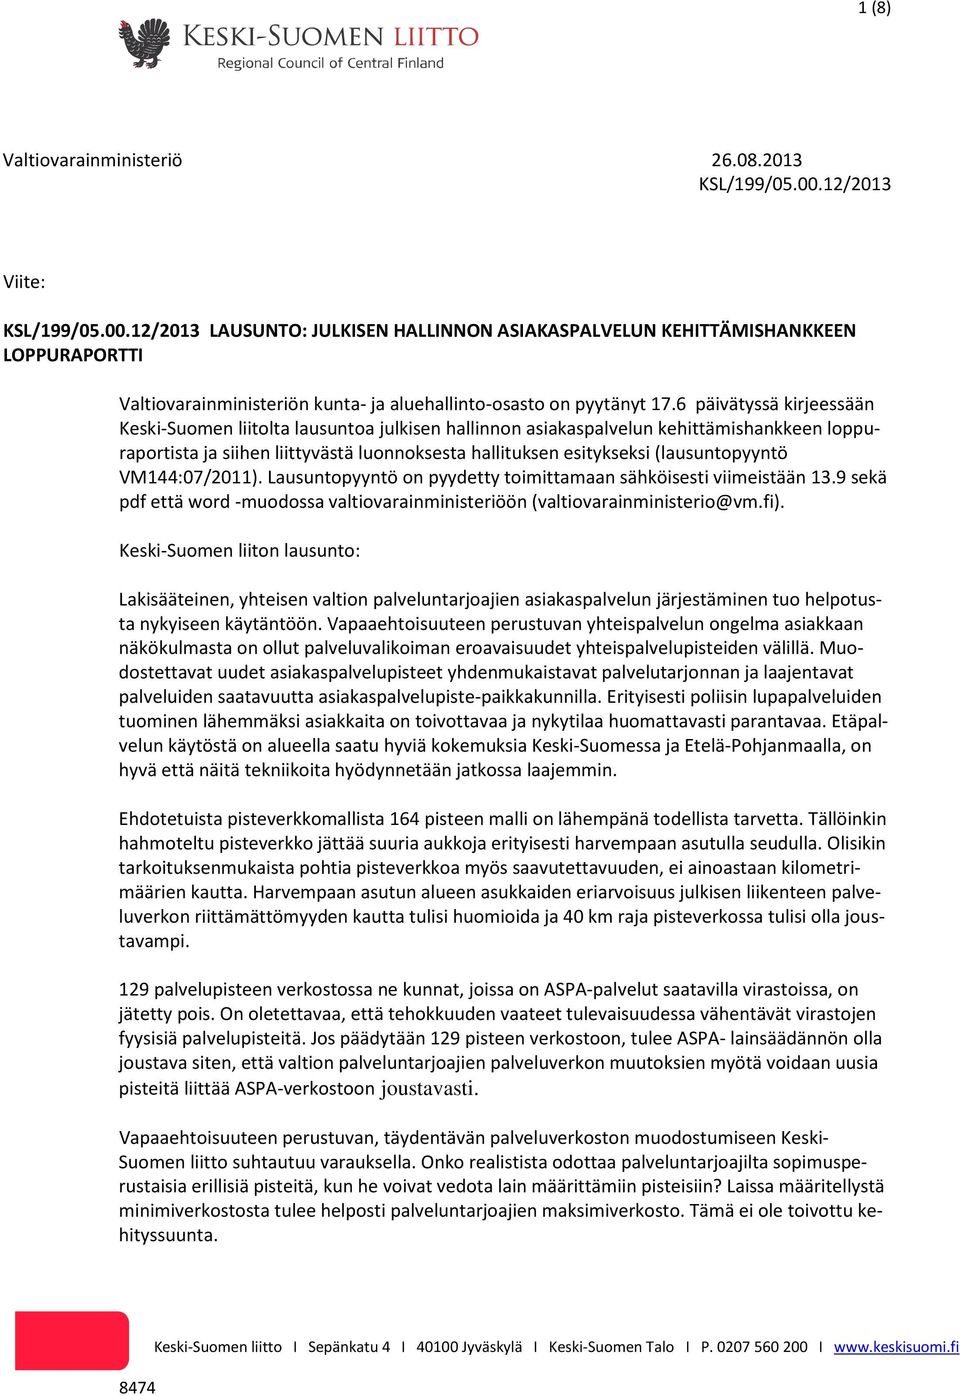 6 päivätyssä kirjeessään Keski-Suomen liitolta lausuntoa julkisen hallinnon asiakaspalvelun kehittämishankkeen loppuraportista ja siihen liittyvästä luonnoksesta hallituksen esitykseksi